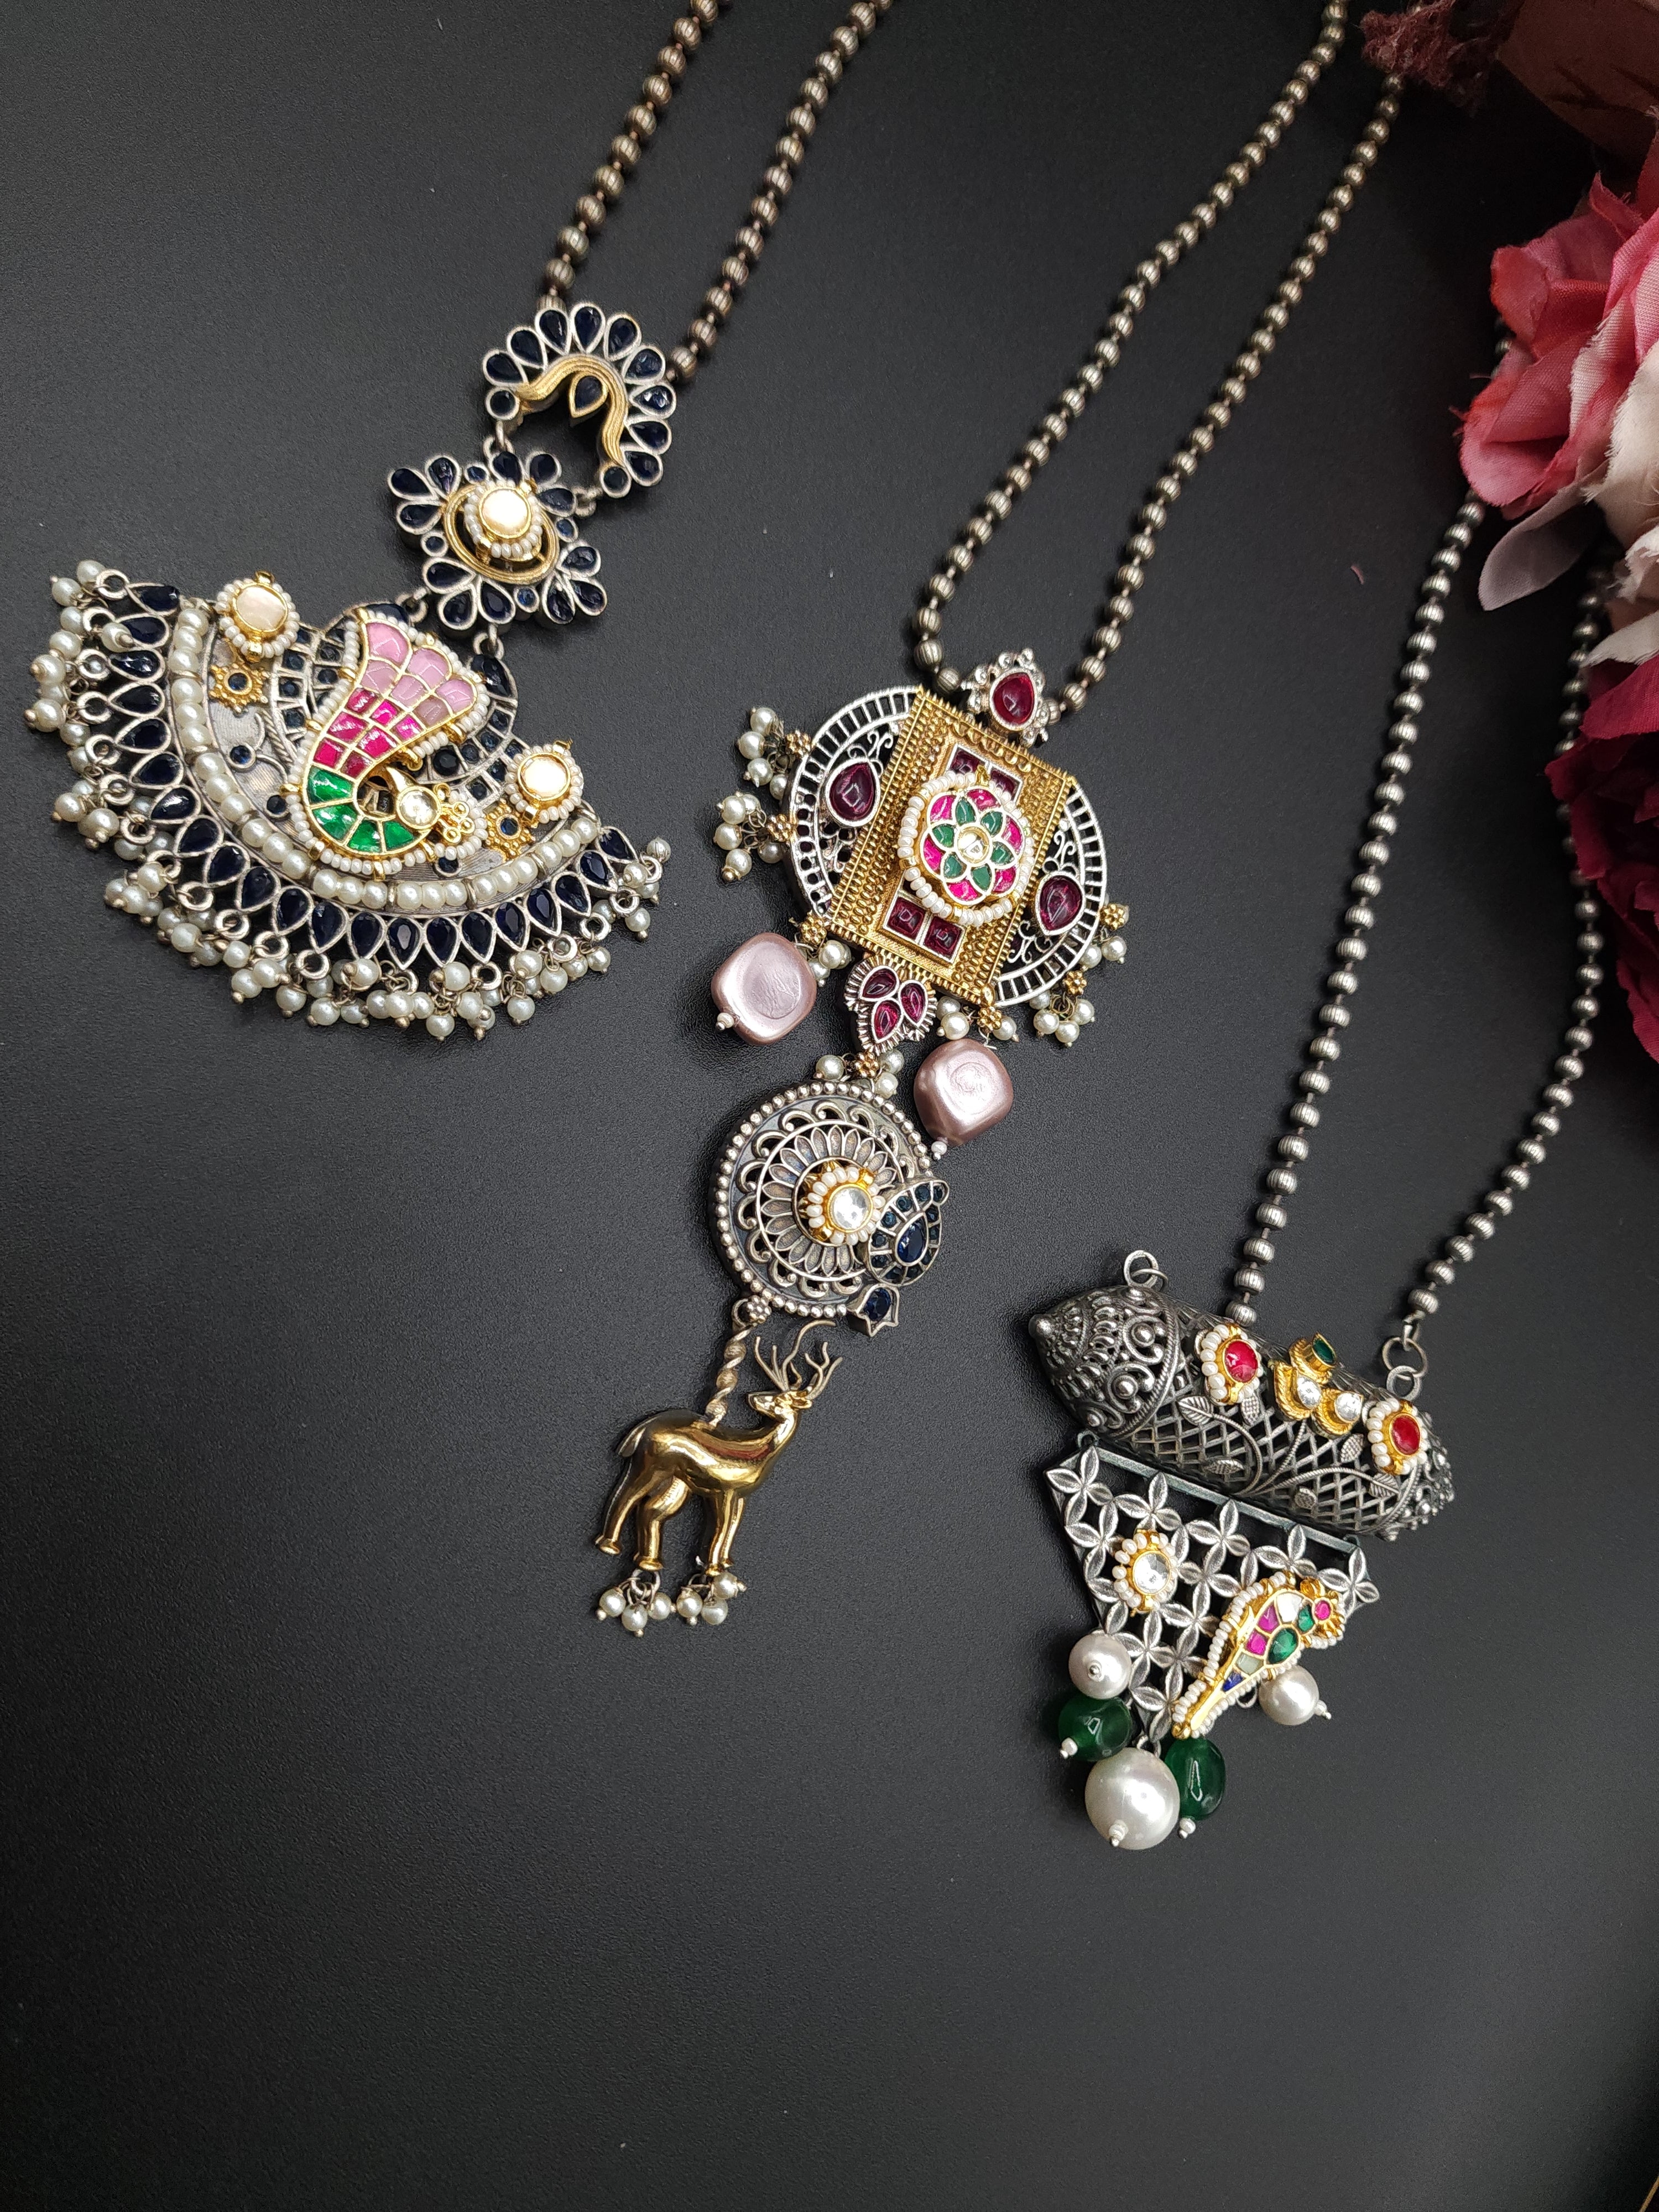 Aanshi fusion pendant necklace